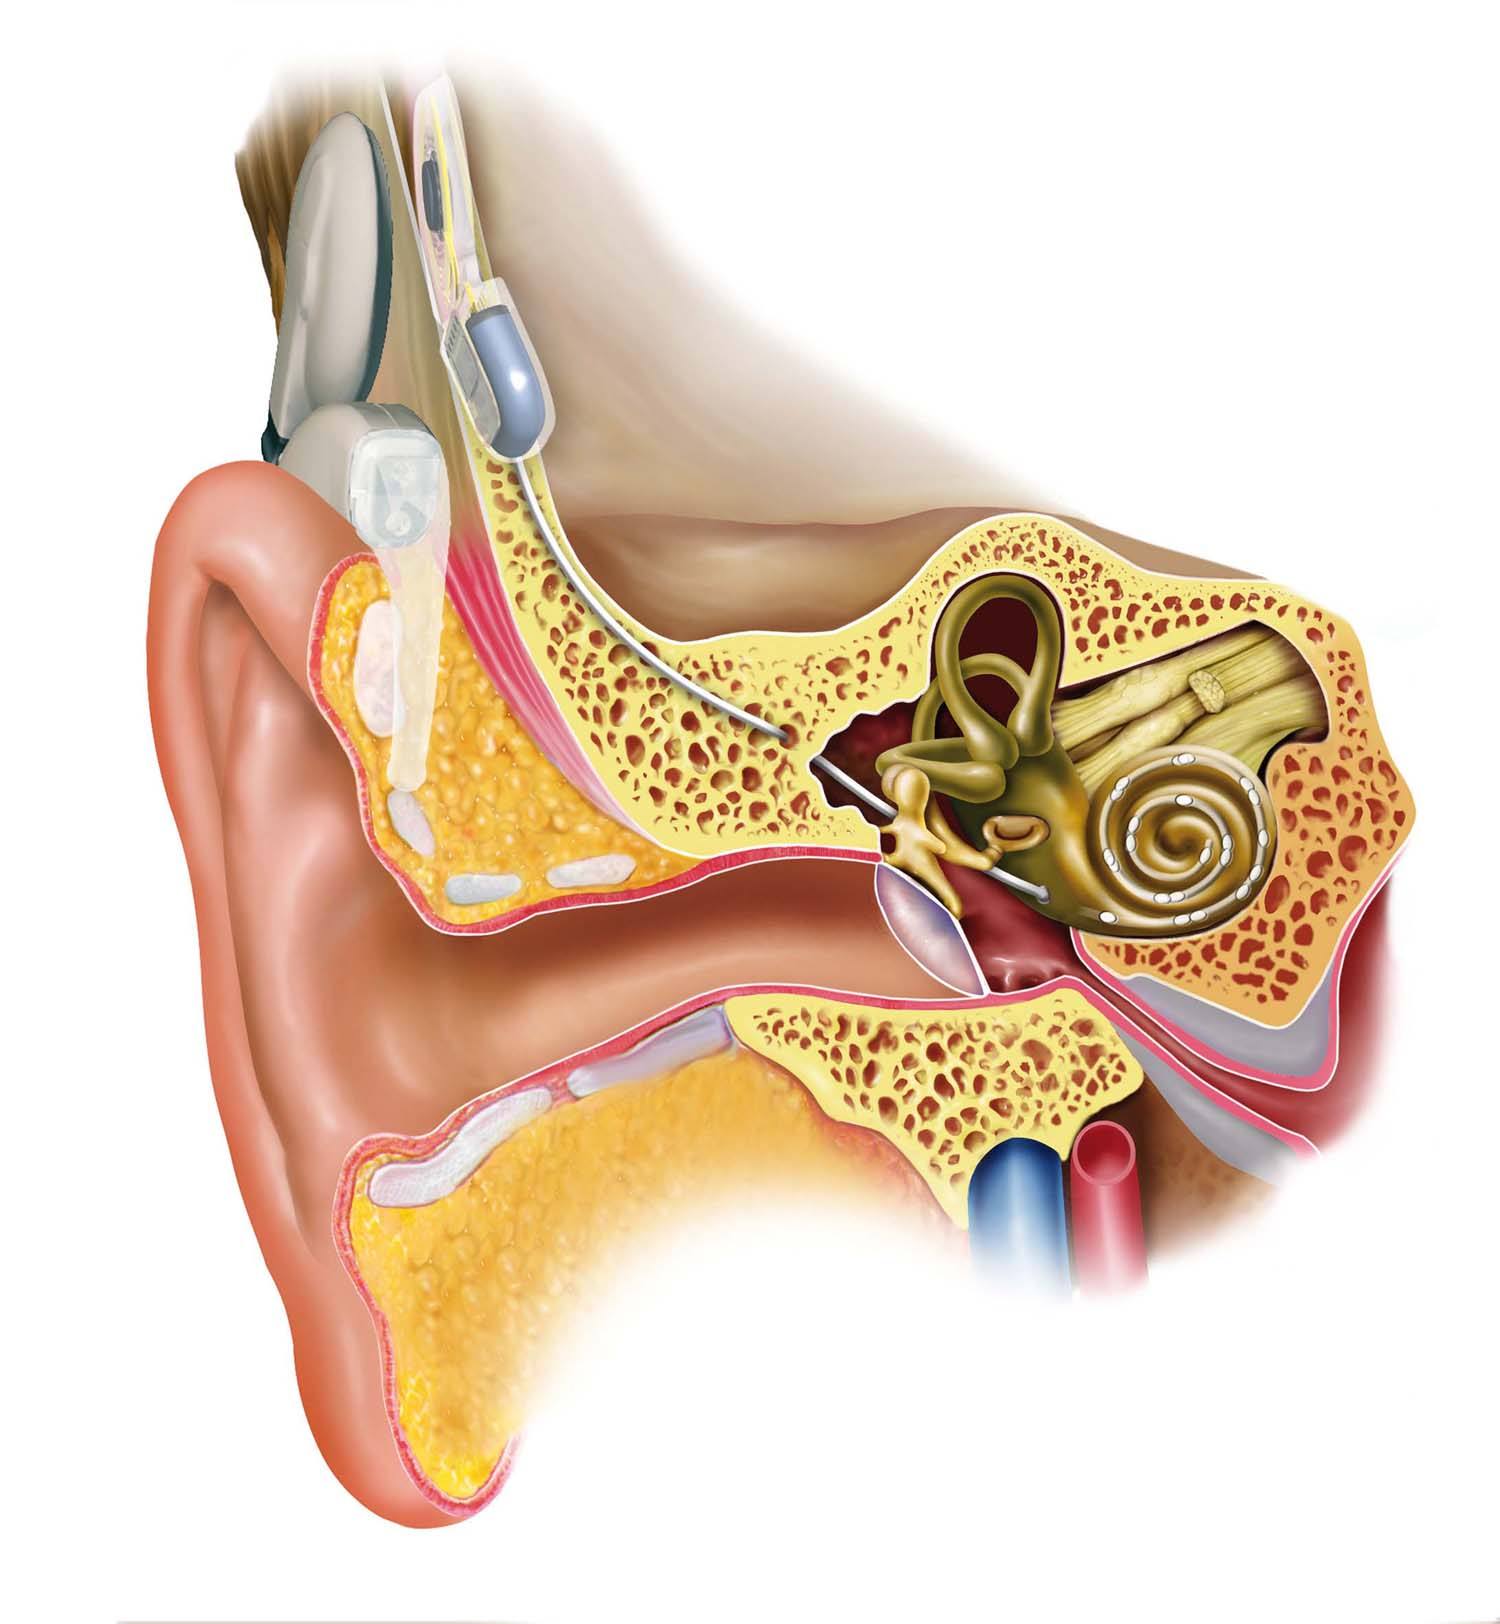 人工耳蜗植入前听障儿童家长该做什么？ - 中国助听器行业网